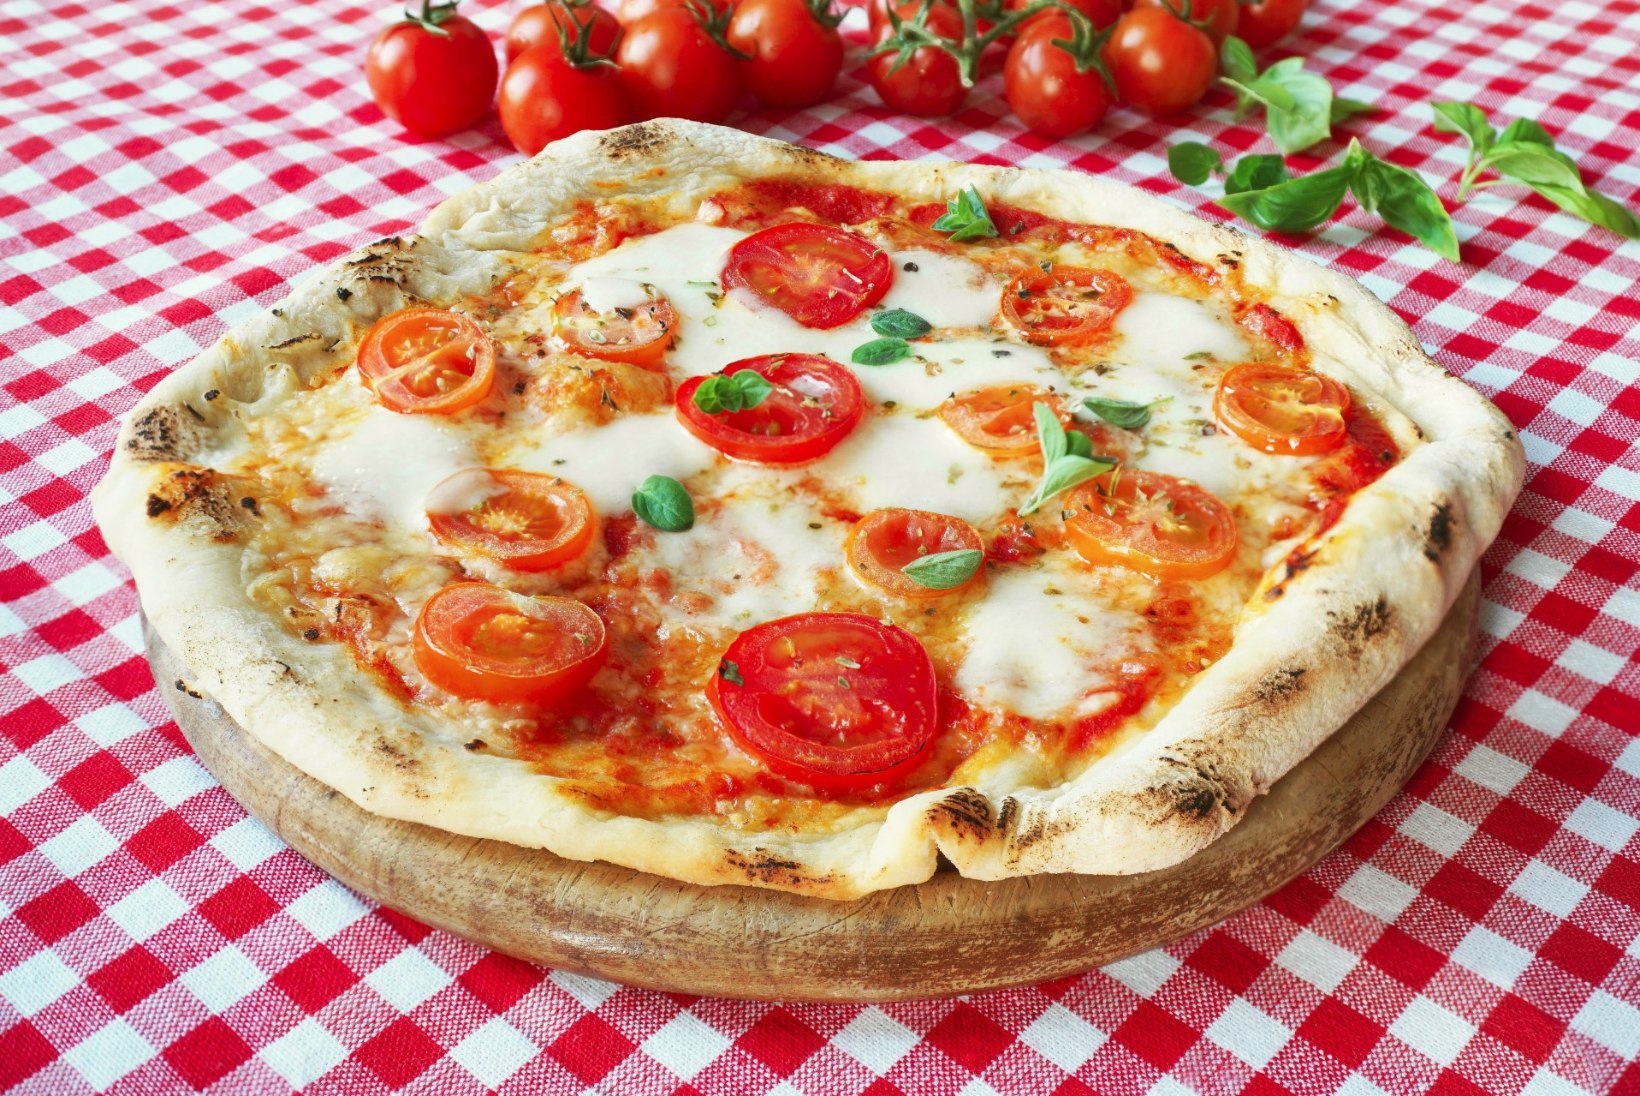 Lugeja küsib: mida teeksid pitsaga, mille põhi on täiesti toores?